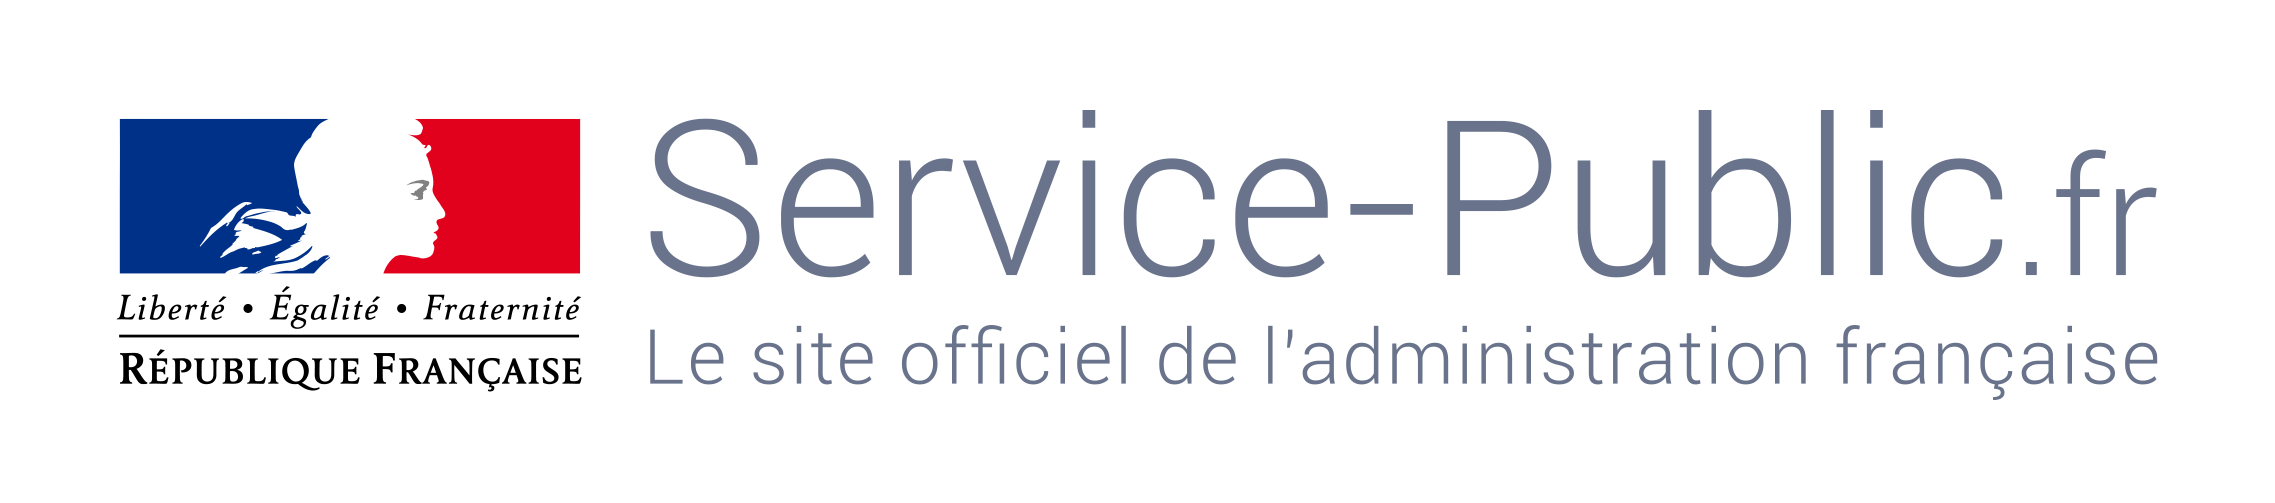 Service Public administration française